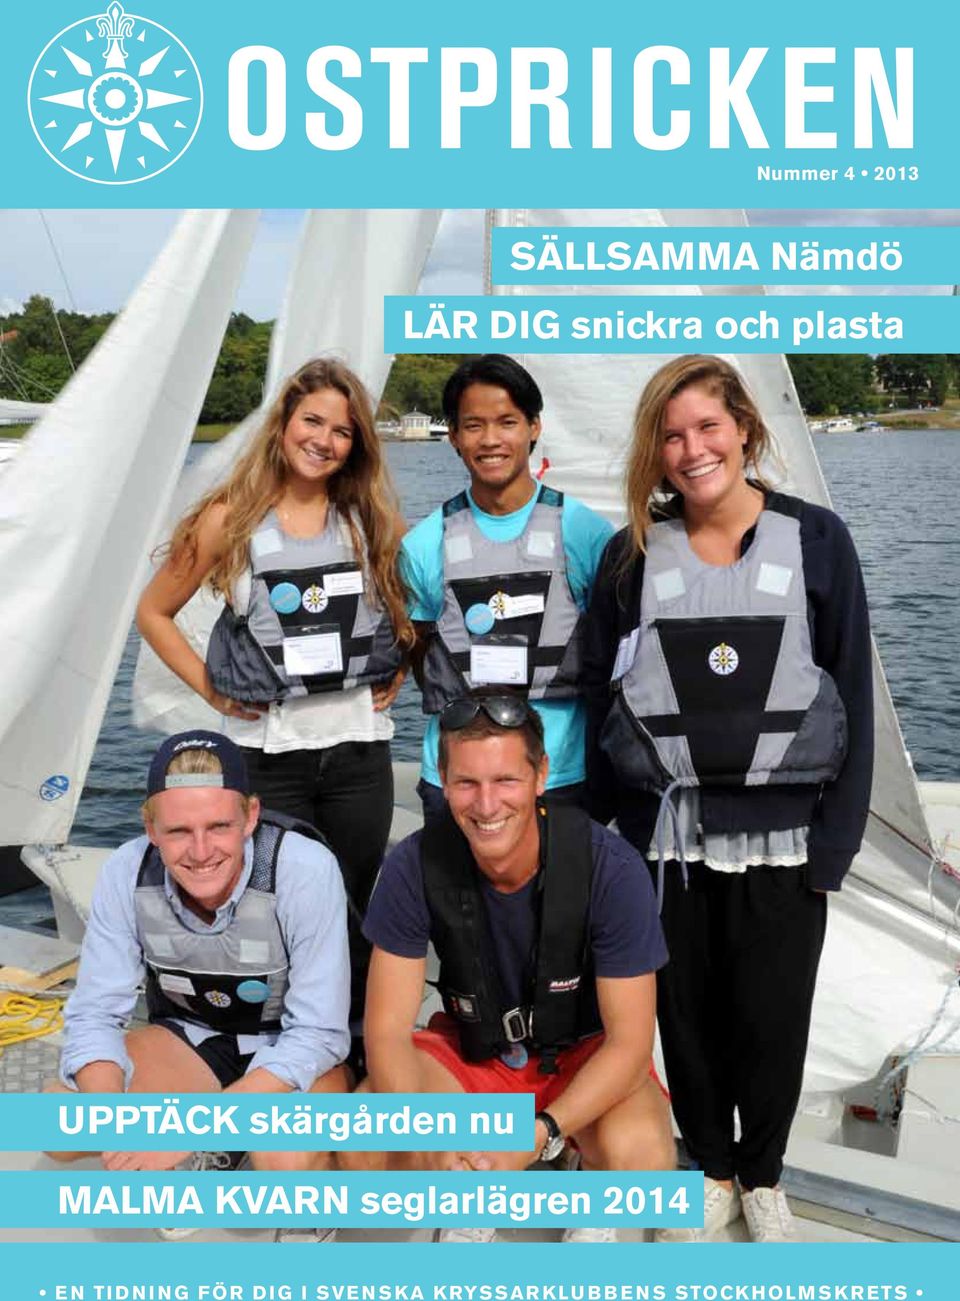 MALMA KVARN seglarlägren 2014 EN TIDNING FÖR